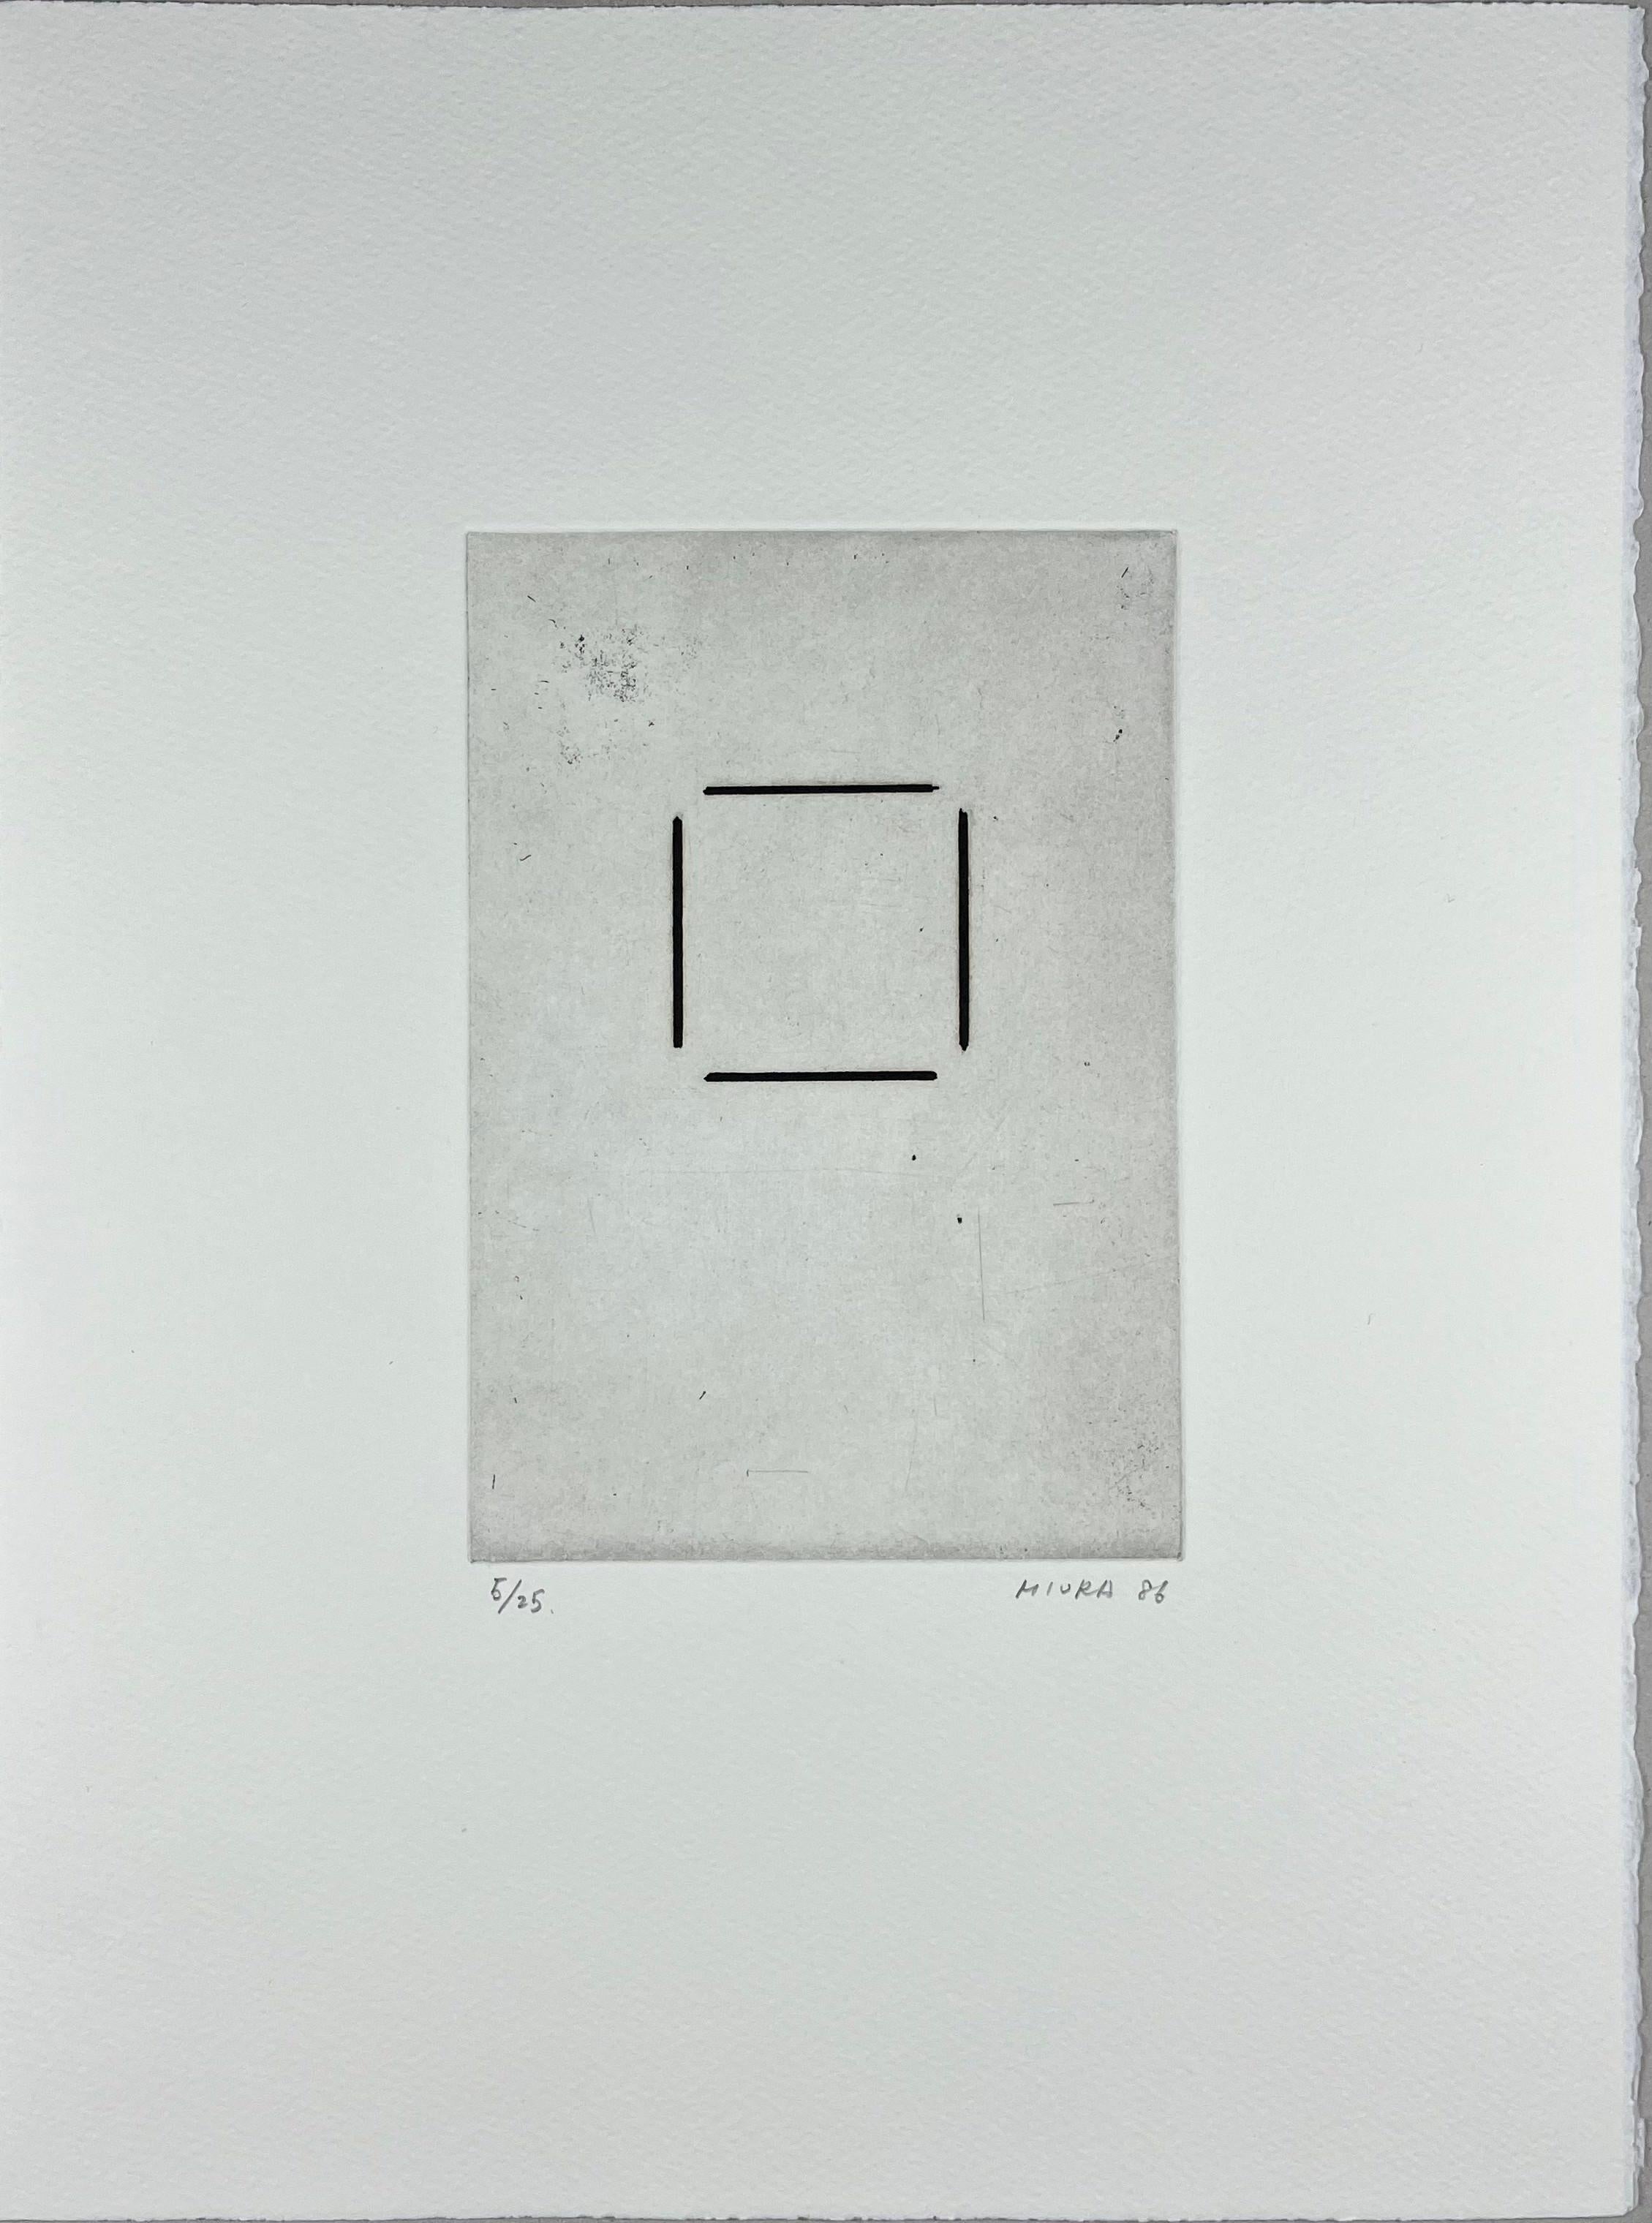 Mitsuo Miura Abstract Print – Japanisch 1986 signiert limitierte Auflage Original-Kunstdruck Radierung  15x11 Zoll.